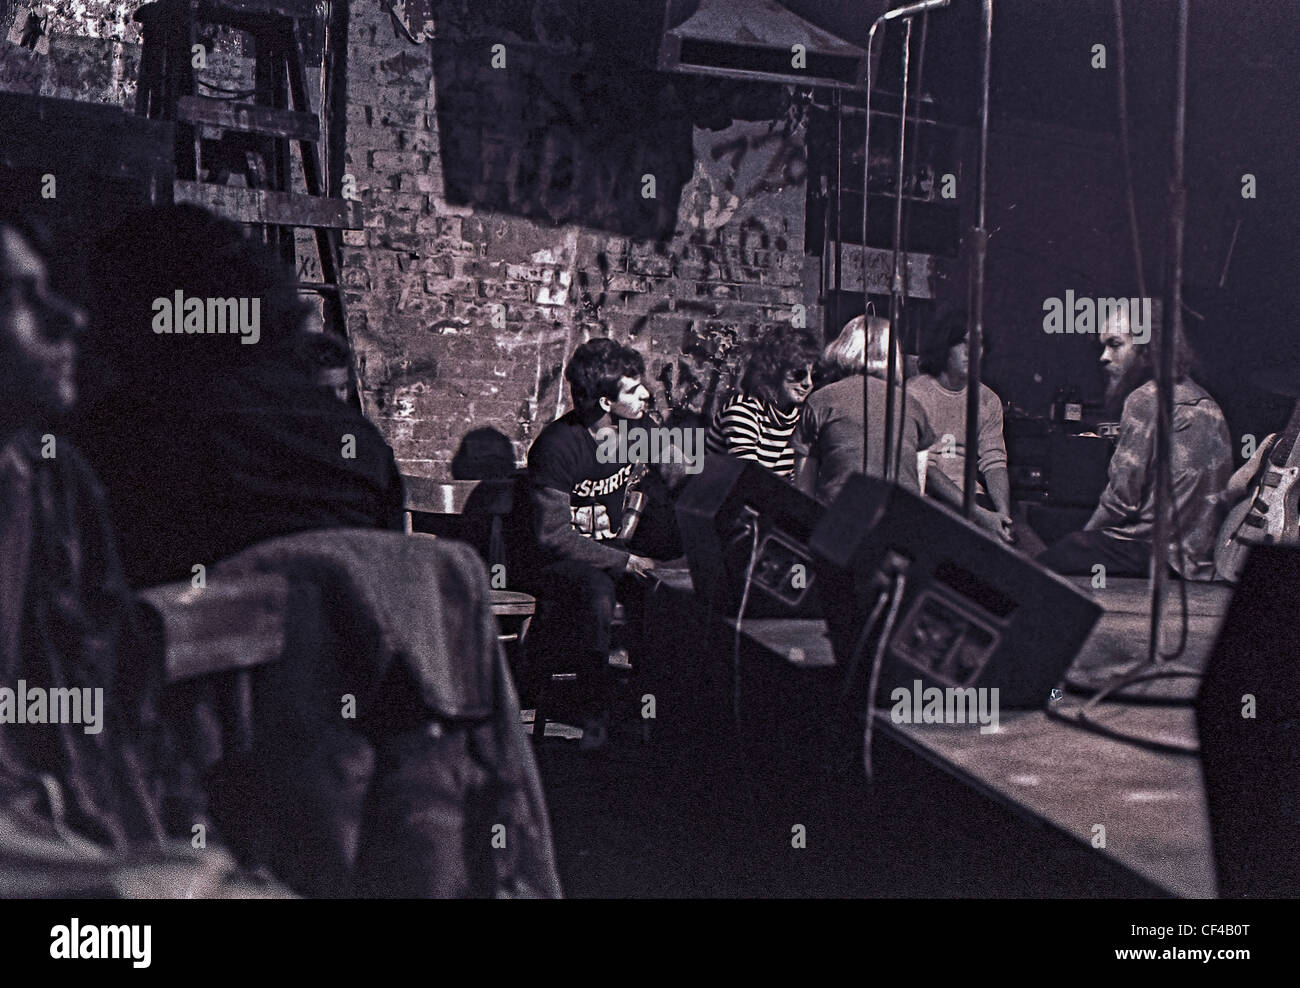 New York, NY, USA - Menschen, die im Nachtclub von C.B.G.B., Innenszene, 1970s Musik, alte amerikanische Fotos Stockfoto